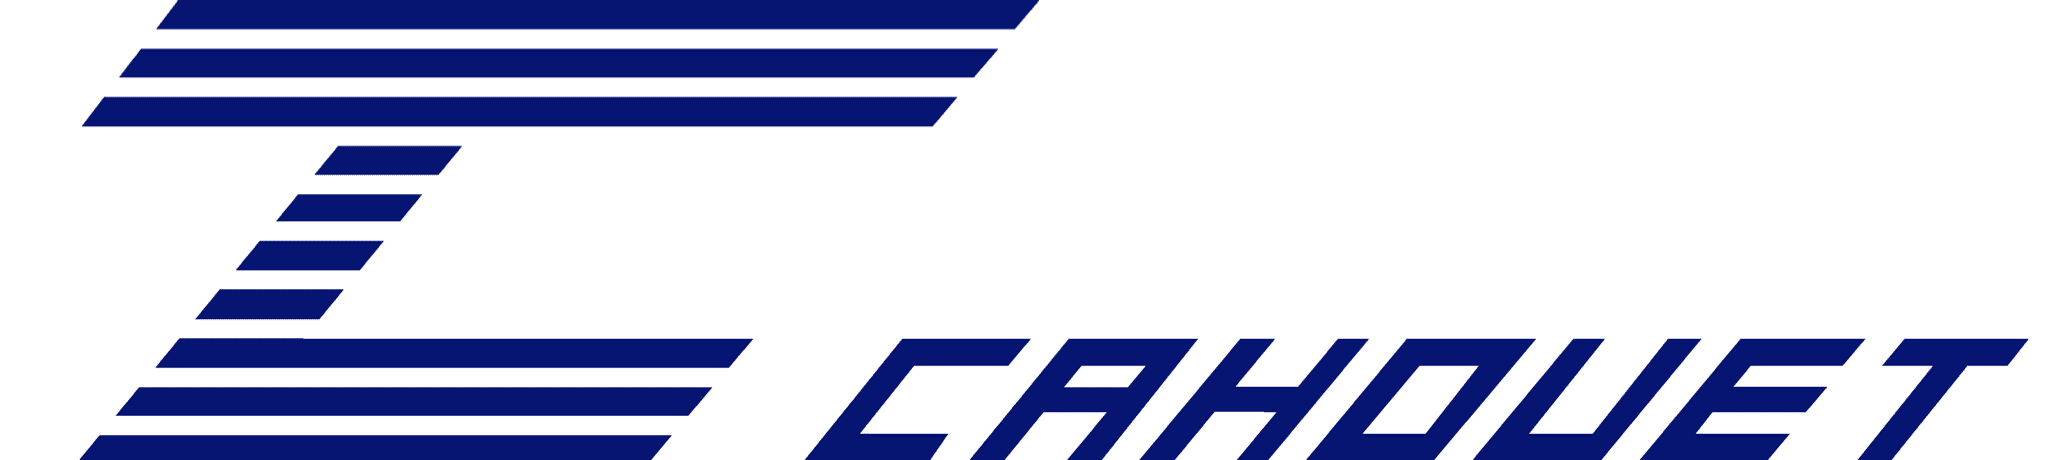 logo Cahouet